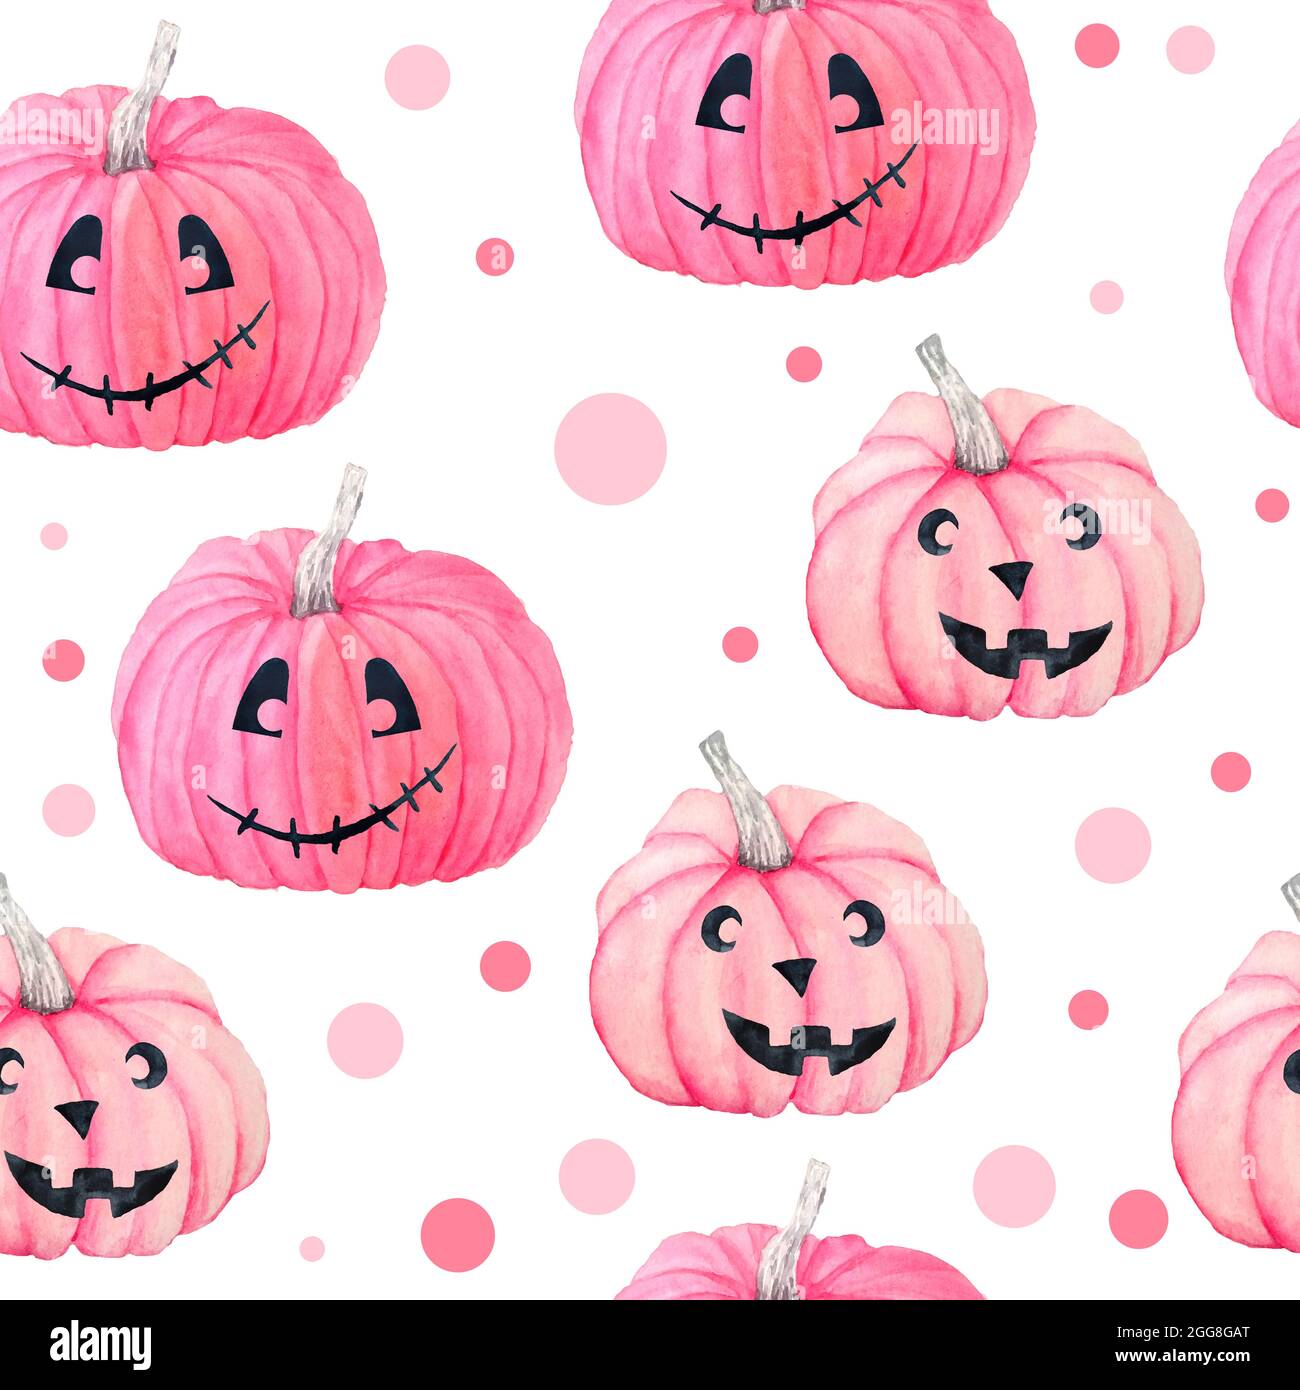 Download Pink Pumpkins Fall Halloween Baxkground Wallpaper  Wallpaperscom